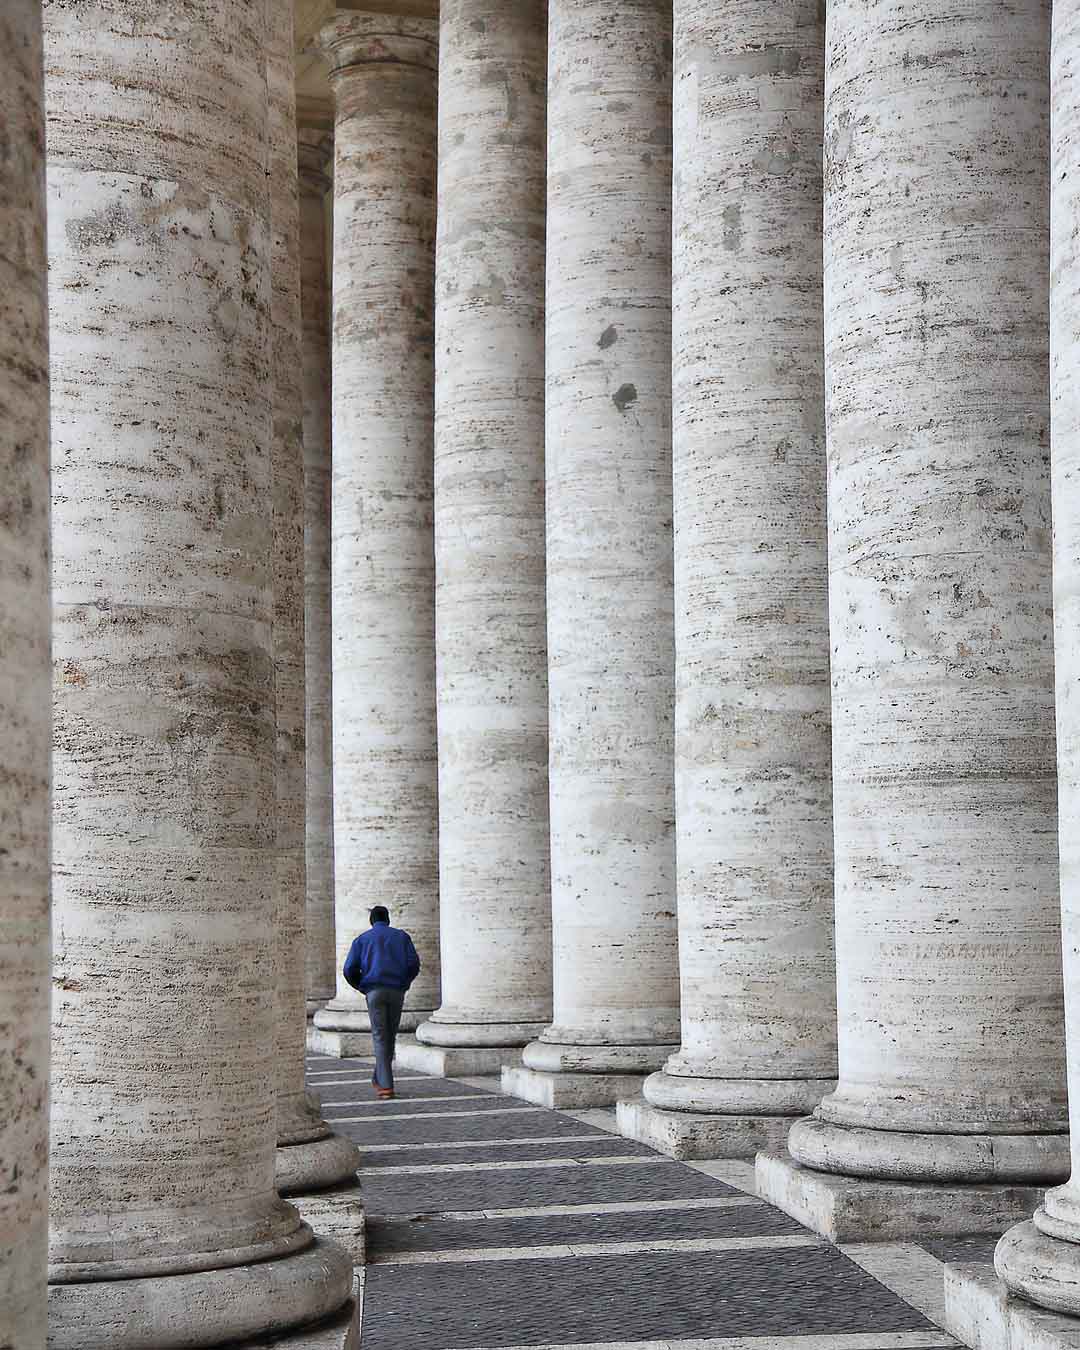 Piazza di San Pietro #4, Vatican City, 2009